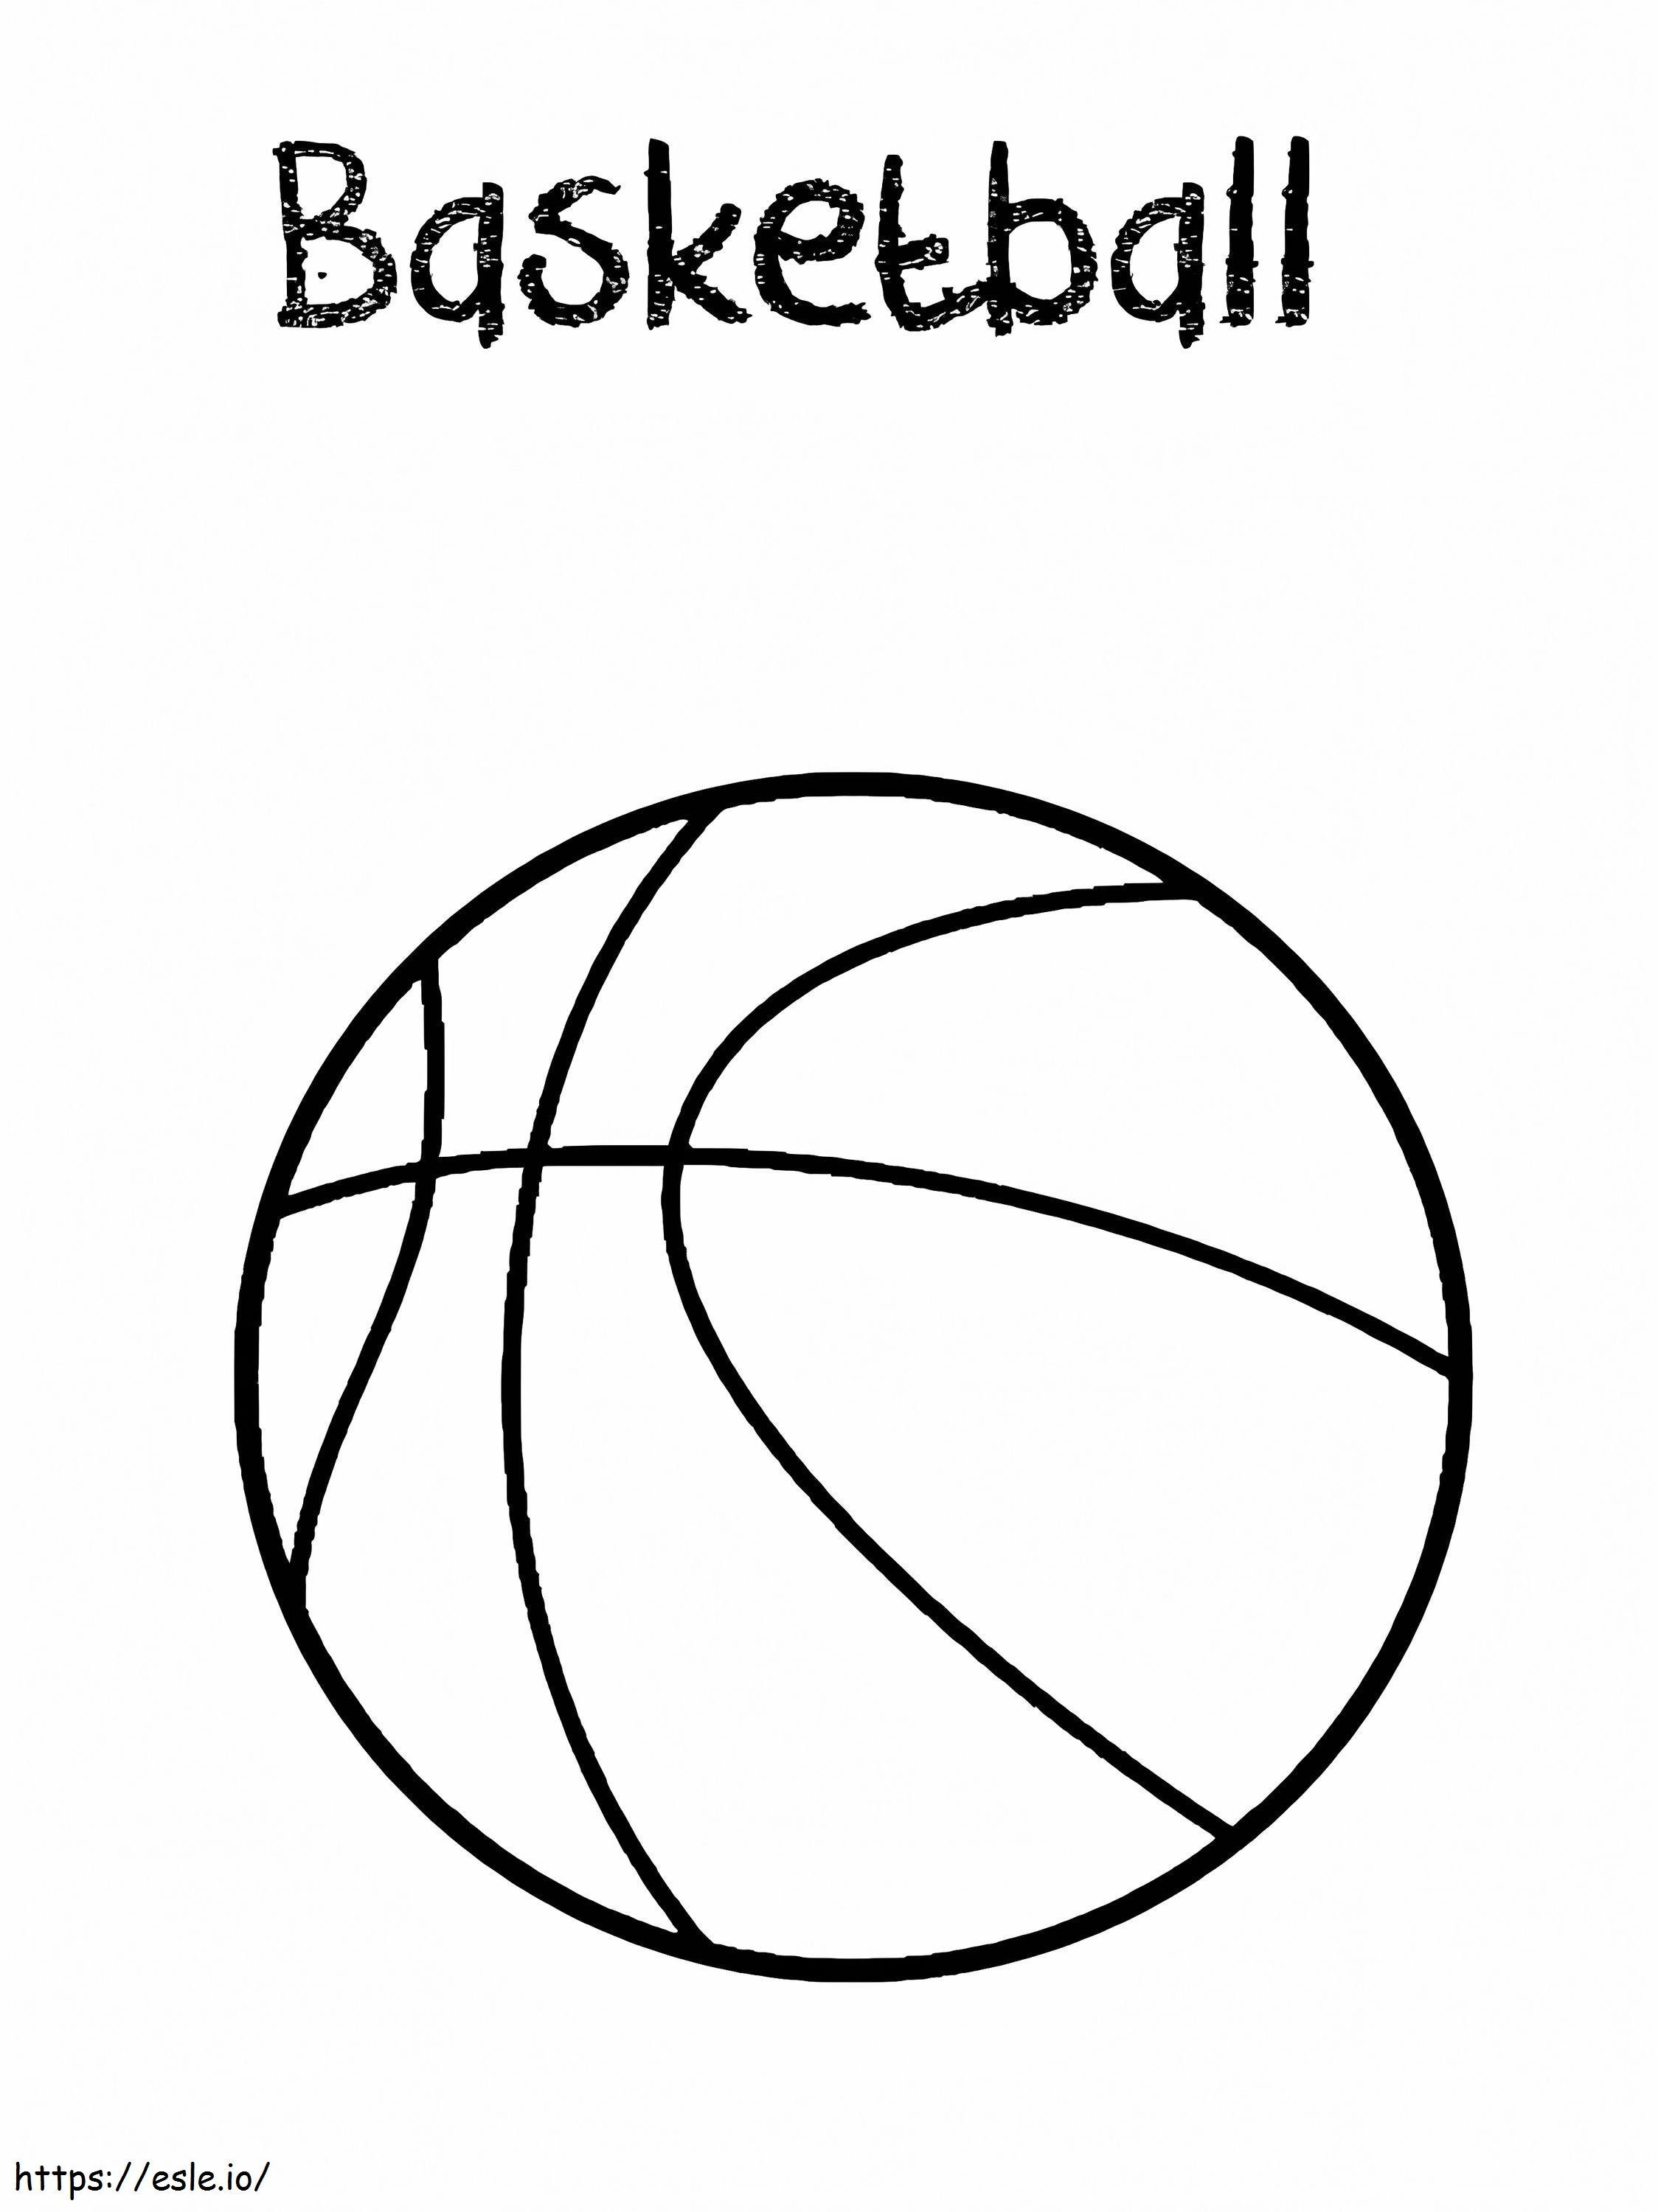 Piłka do koszykówki do wydrukowania kolorowanka